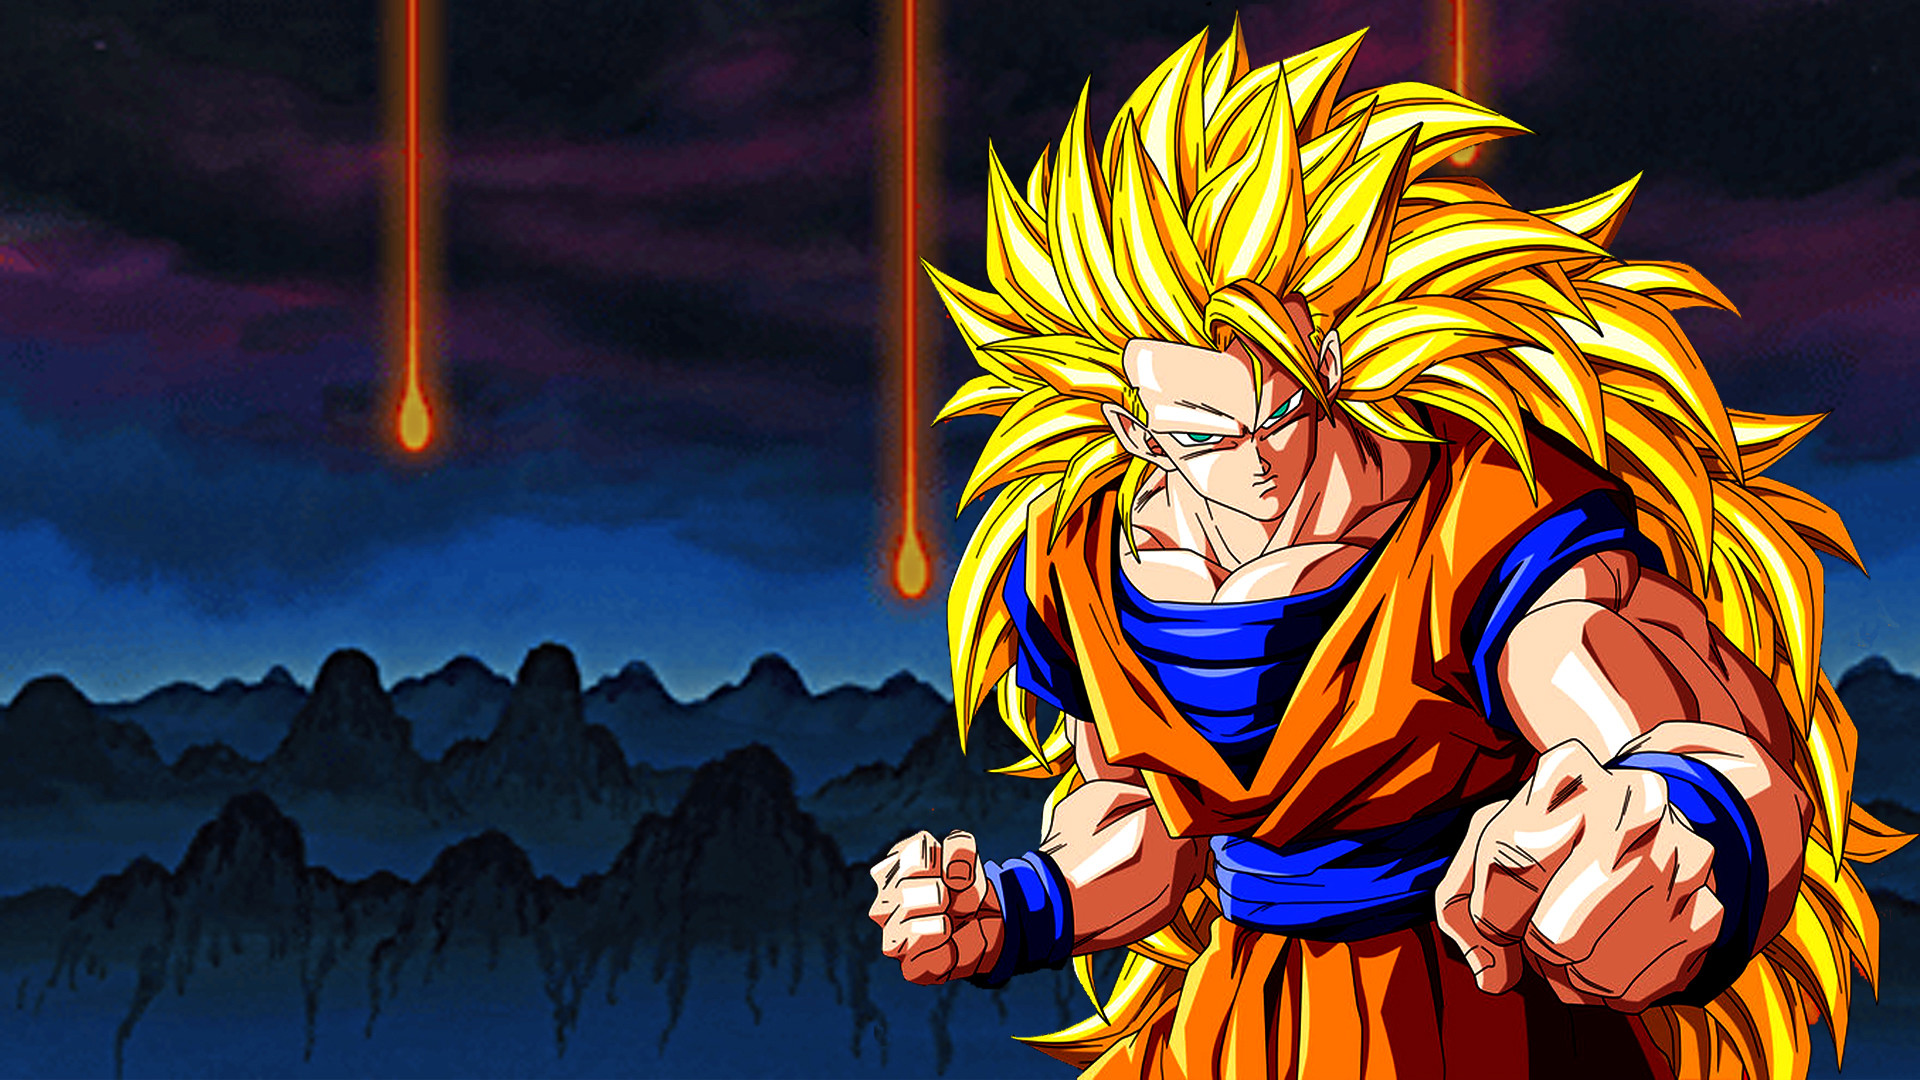 Goku and Vegeta Super Saiyan God Wallpapers  Top Free Goku and Vegeta  Super Saiyan God Backgrounds  WallpaperAccess